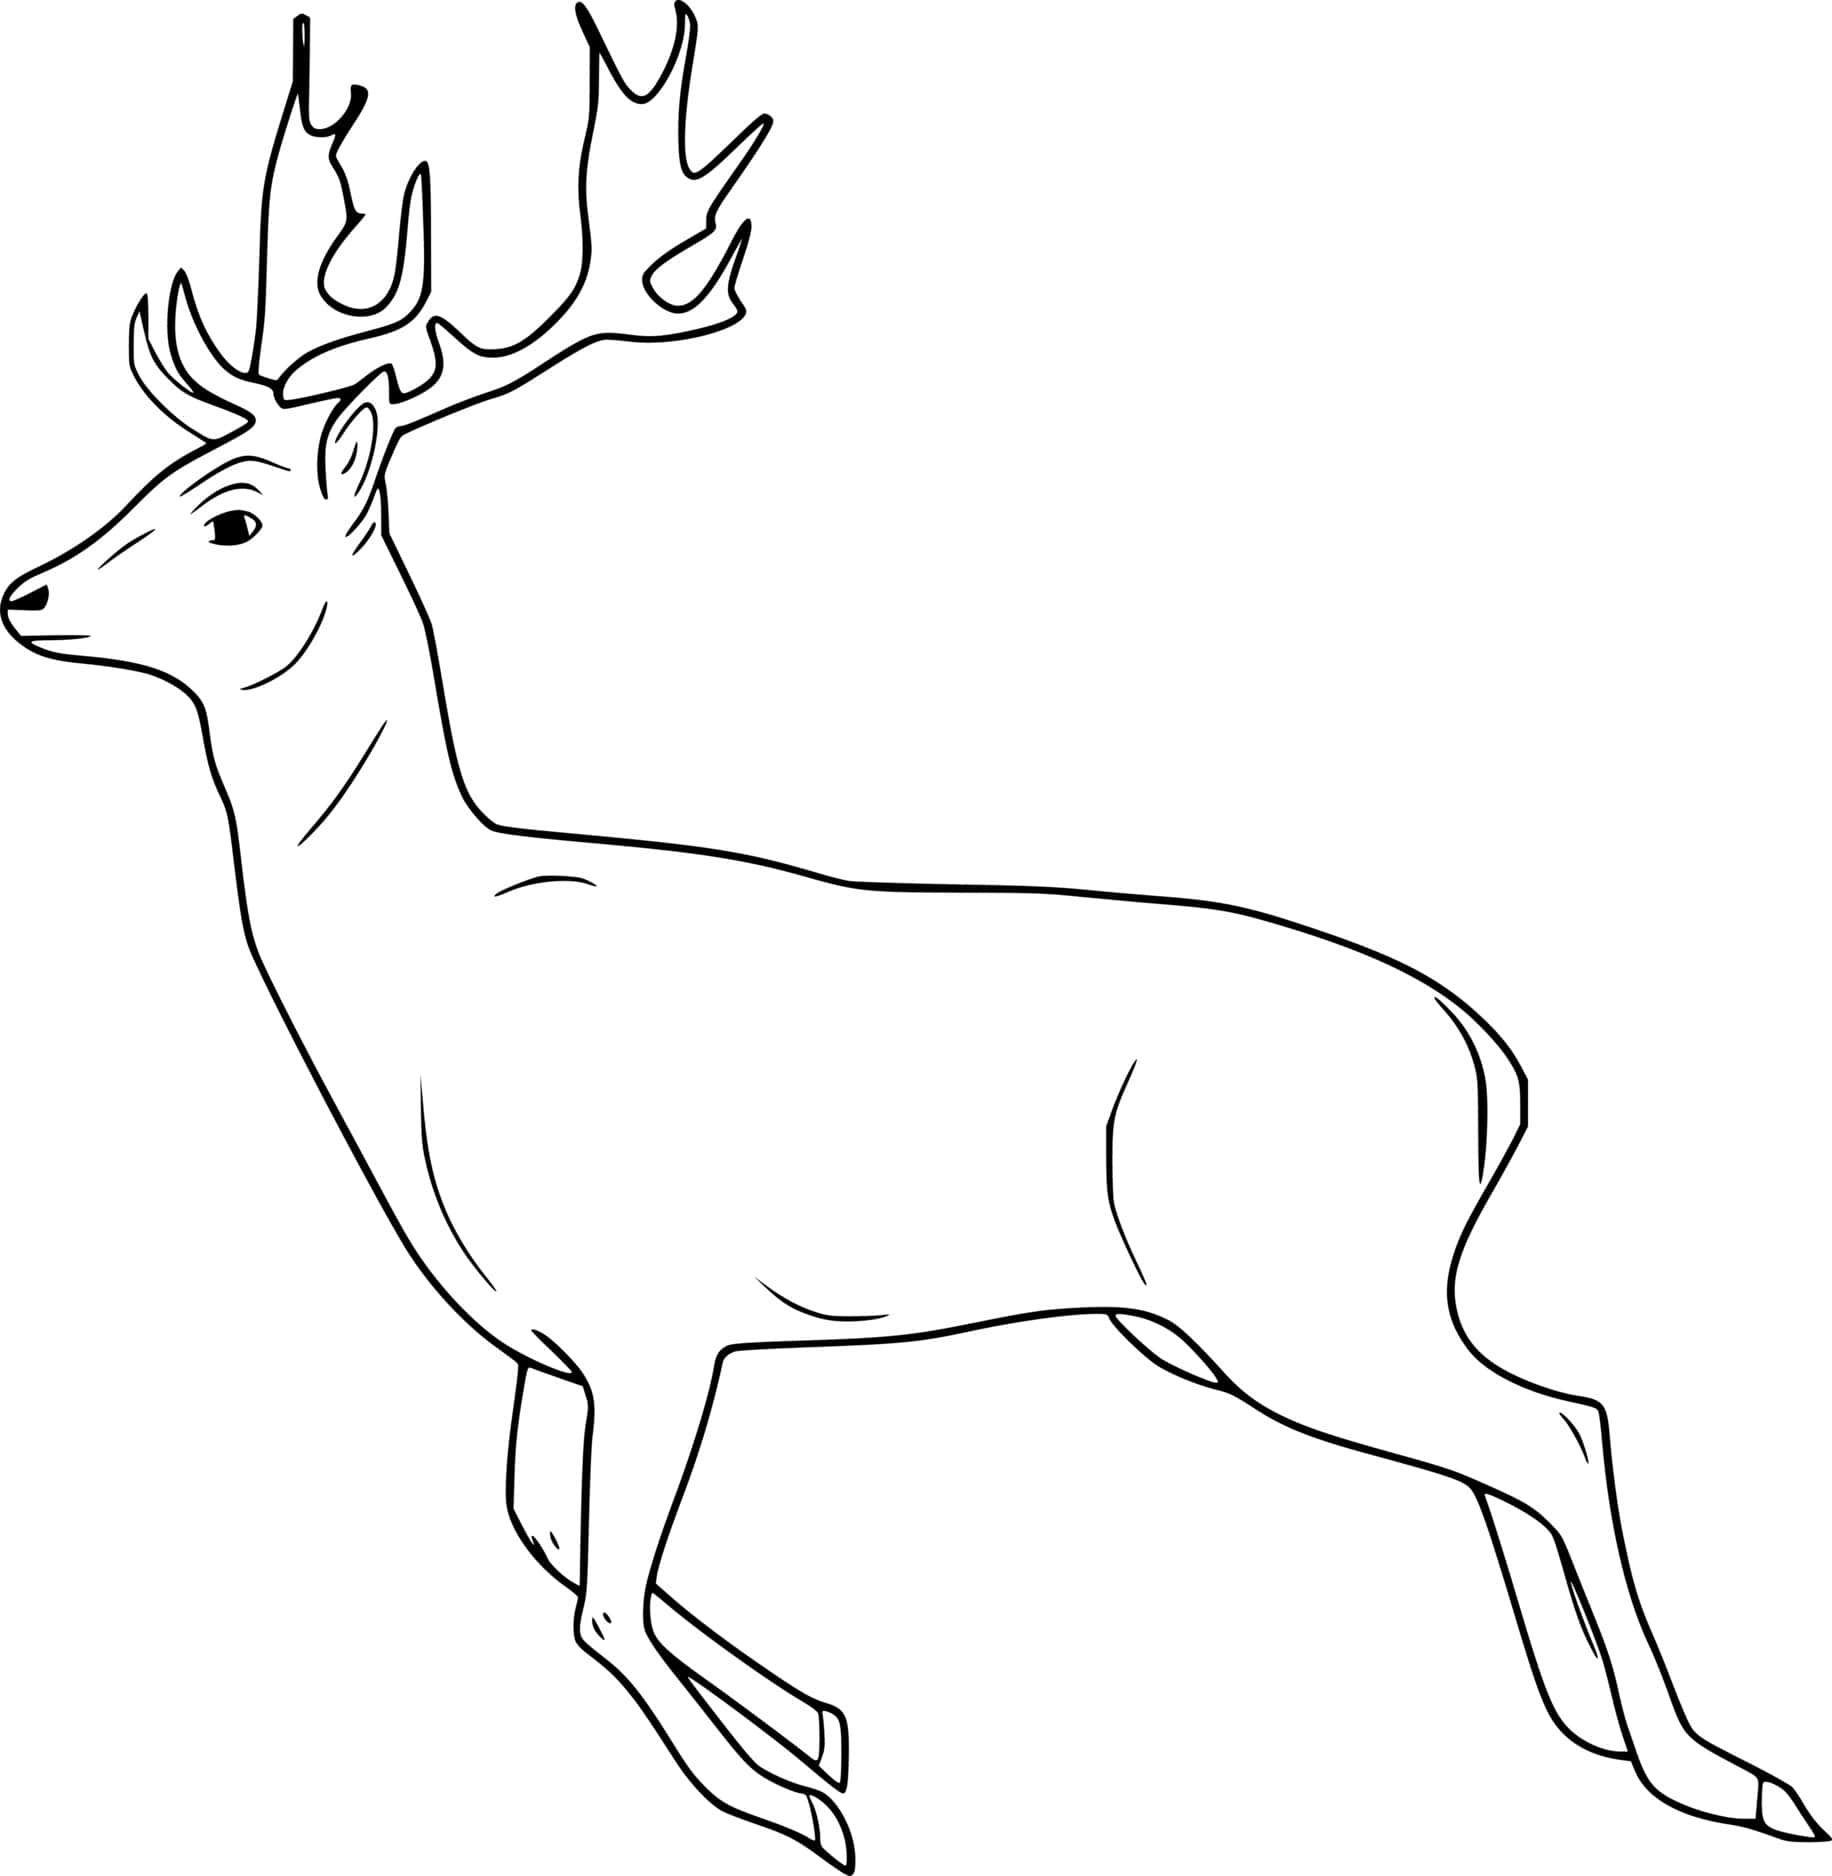 Simple Running Deer Coloring Page